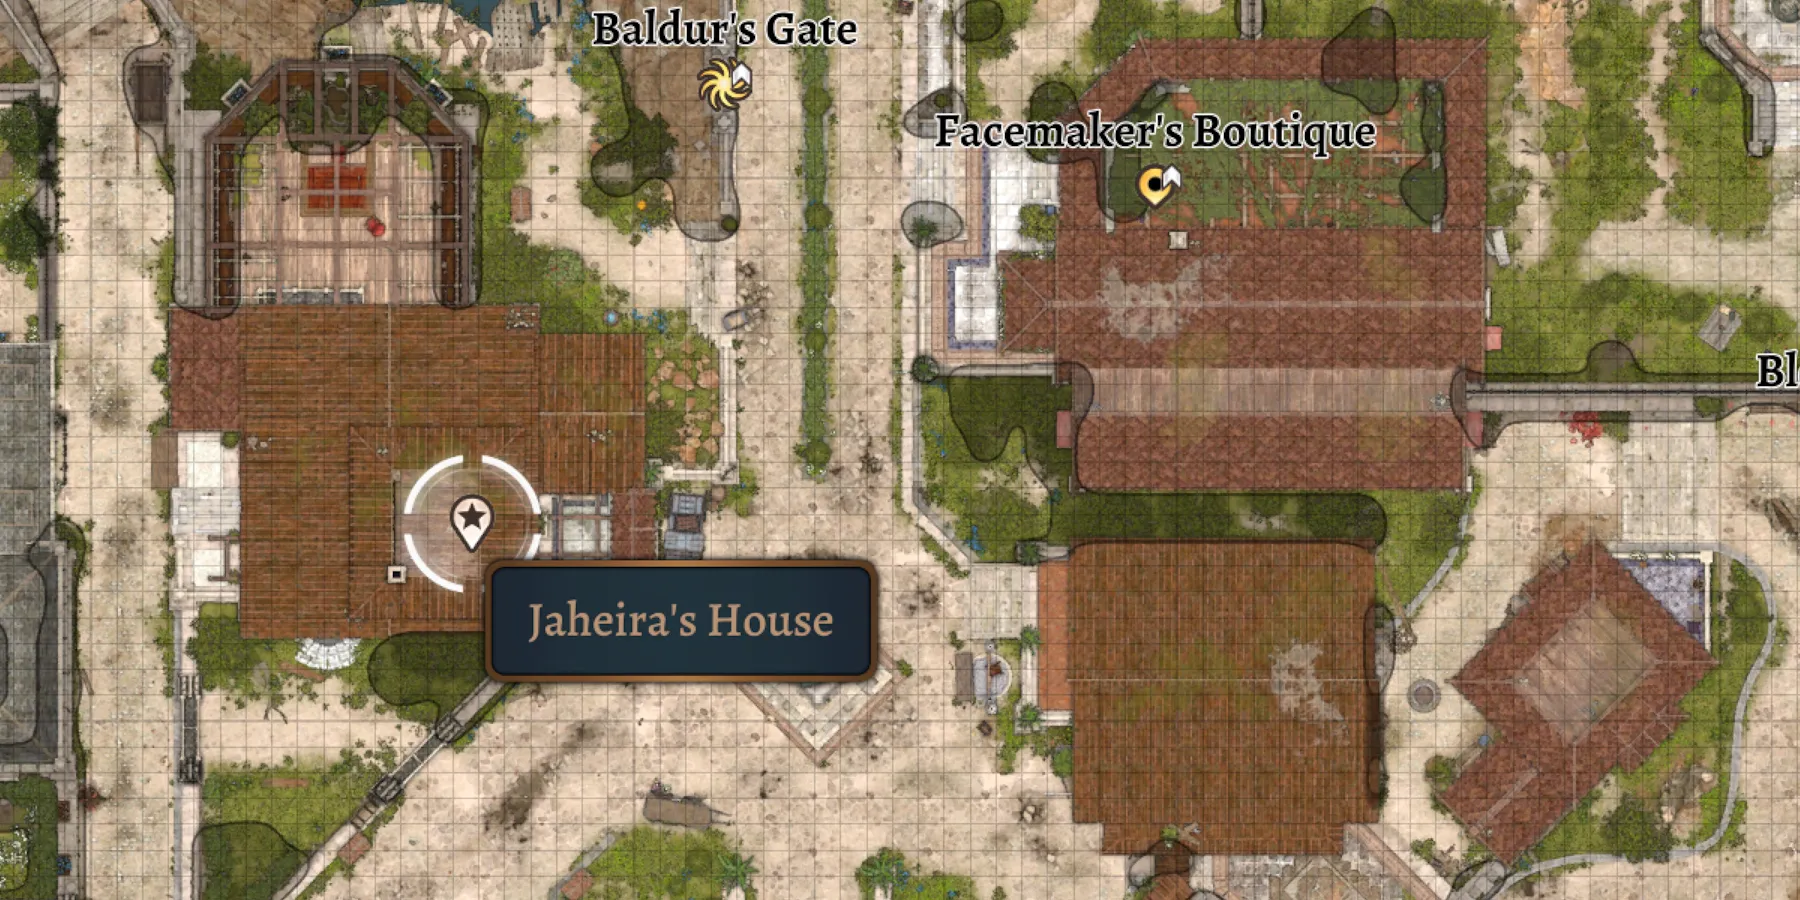 Jaheira’s House